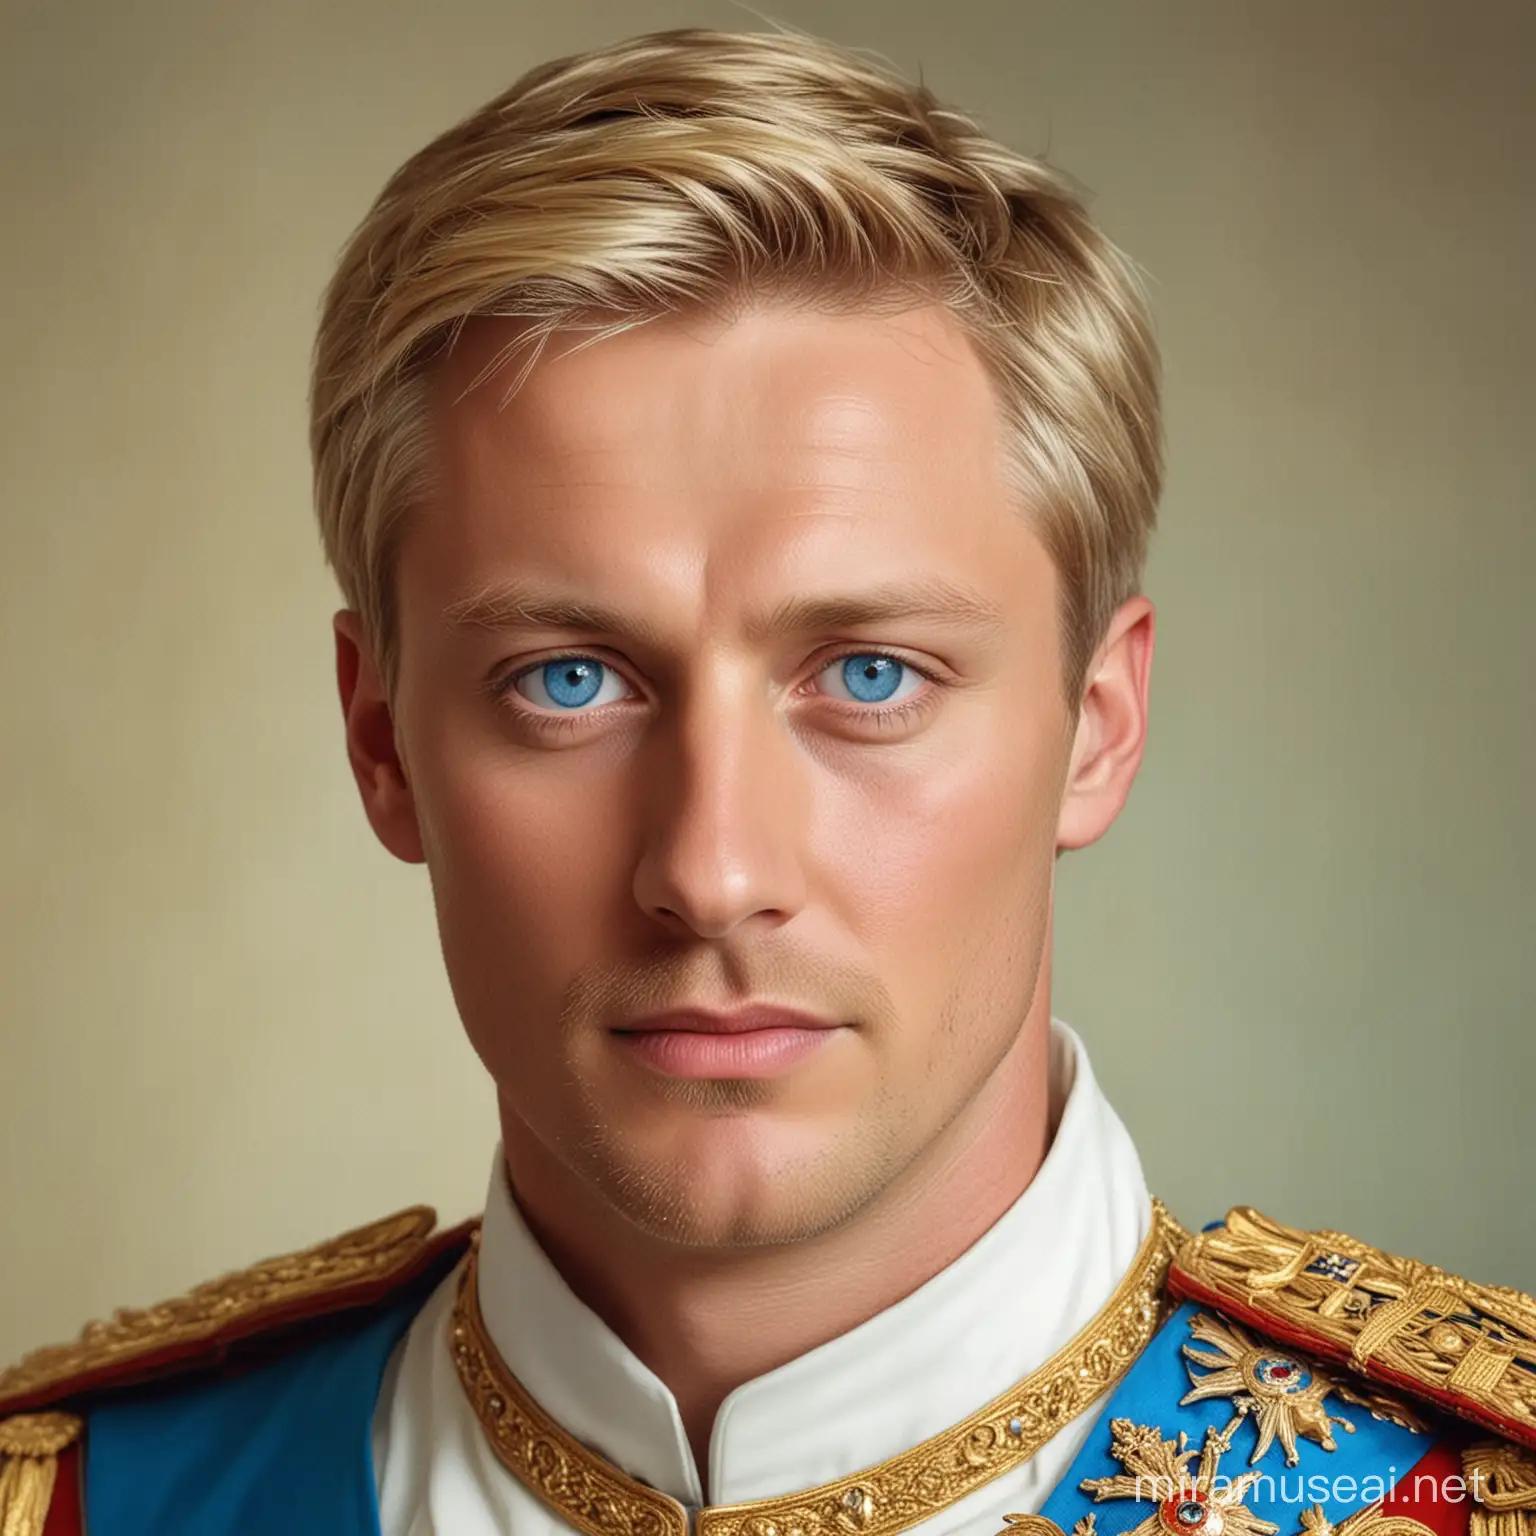 мужчина, 36 лет, блондин, с голубыми глазами, император Российской Империи, XXI век